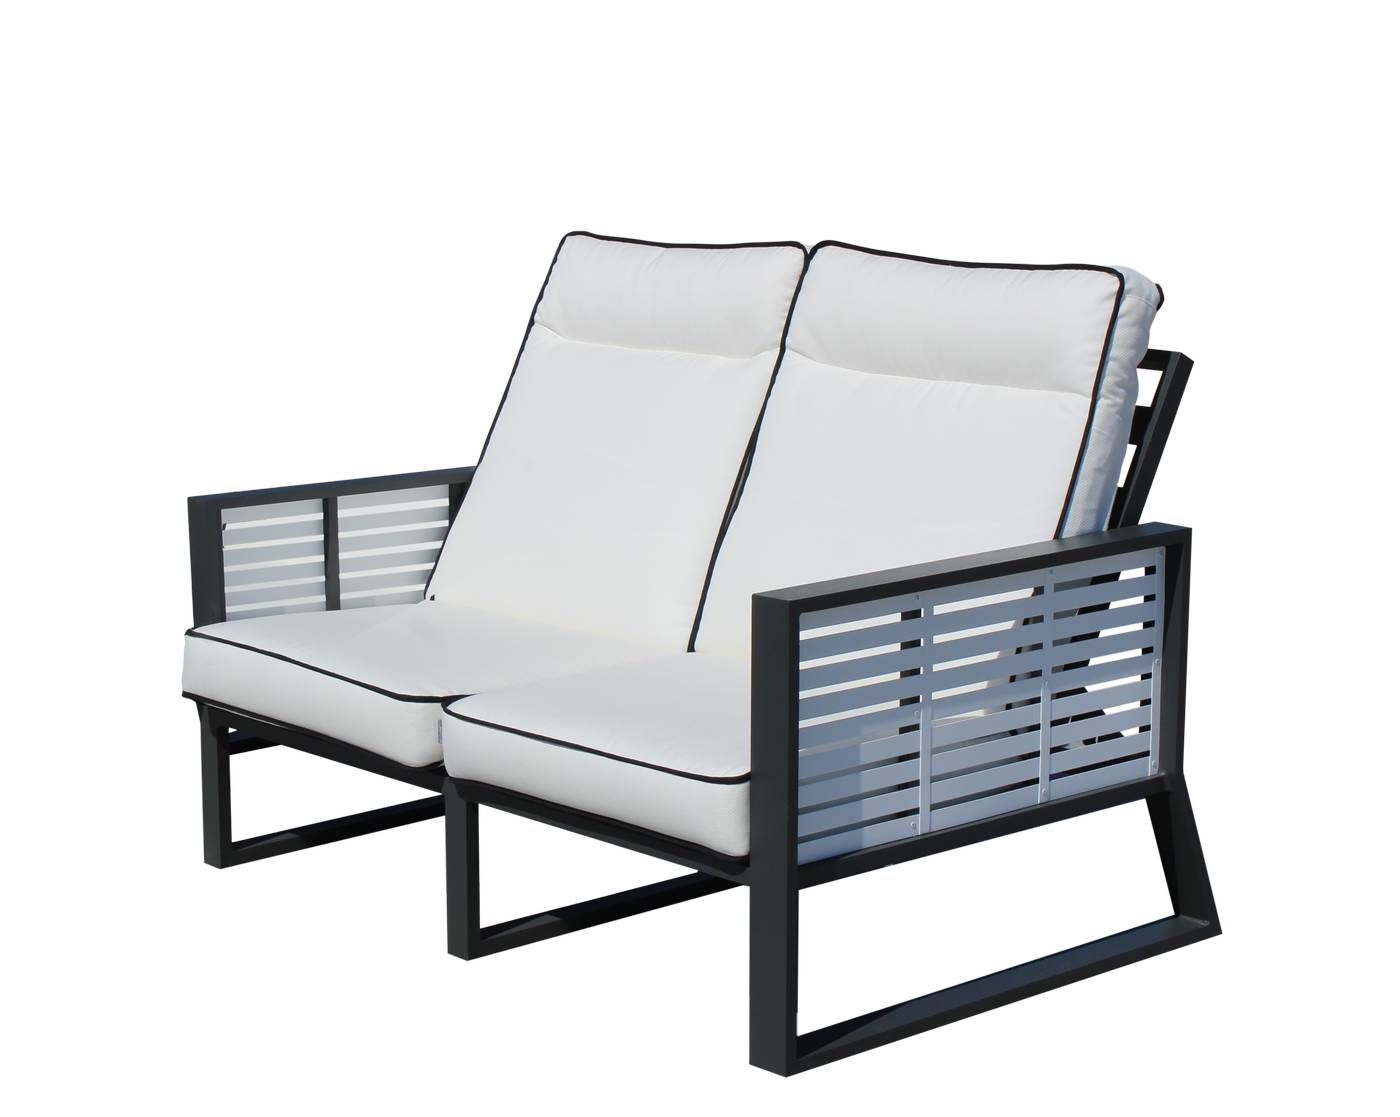 Set Aluminio Luxe Samira-7 - Exclusivo conjunto de alumnio bicolor: 1 sofá de 2 plazas reclinable + 2 sillones reclinables + 1 mesa de centro.